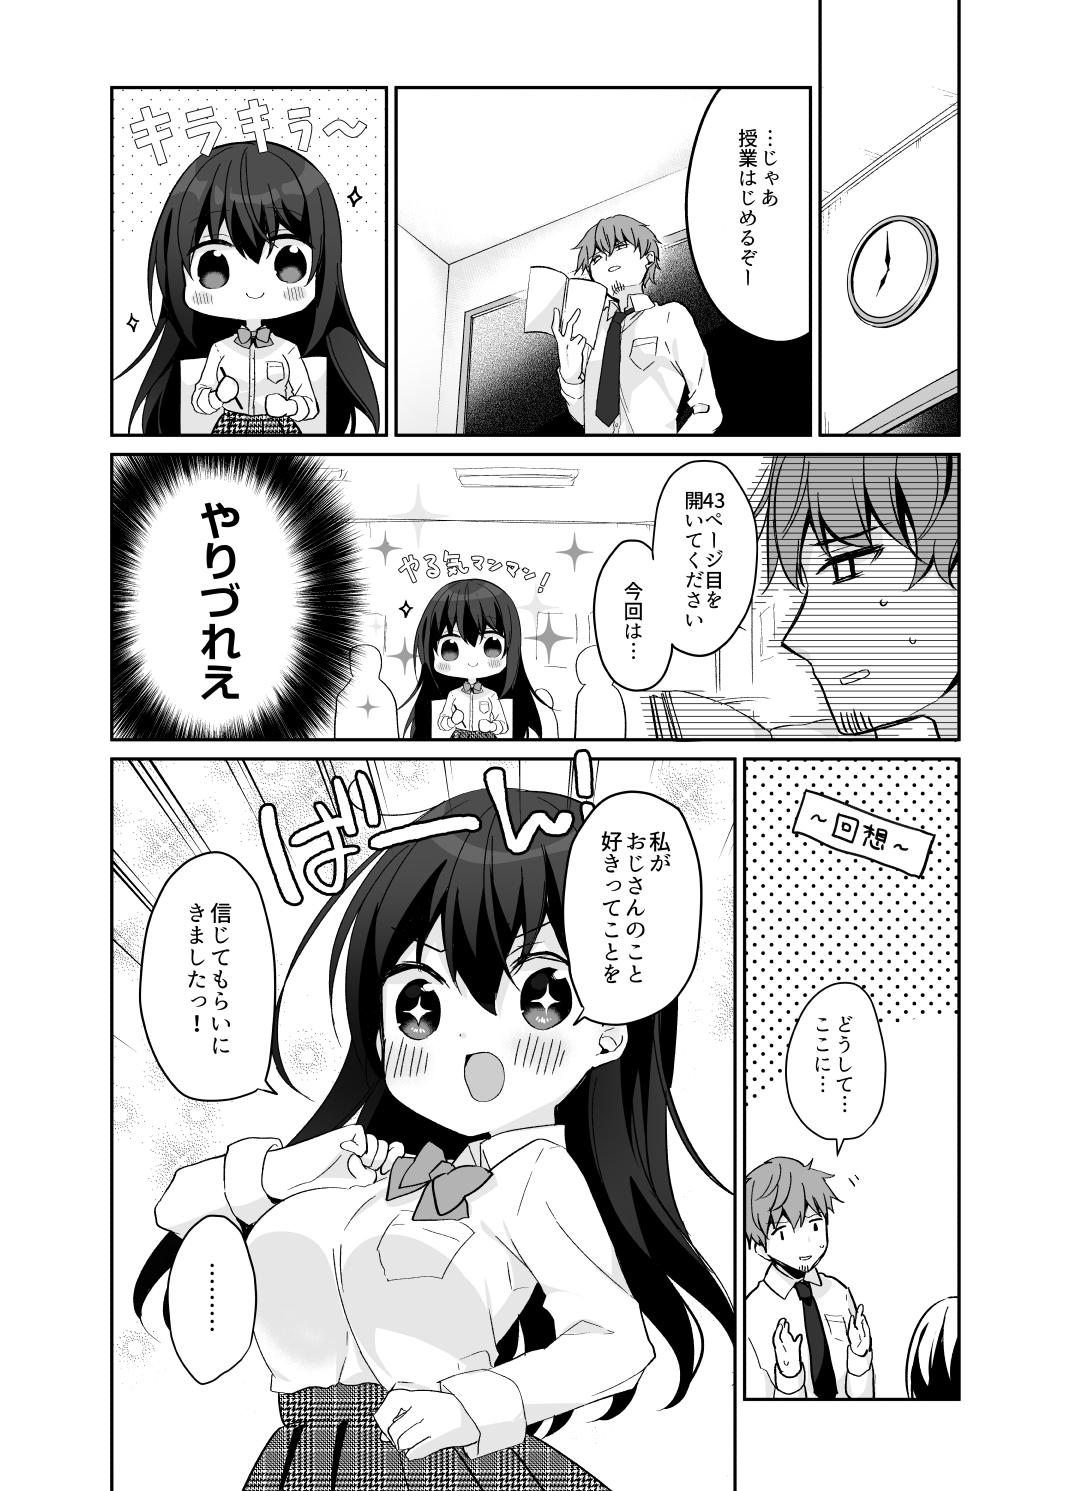 Arrecha 12-sai Sa no Himitsu Renai 2 - Original Ex Girlfriend - Page 8